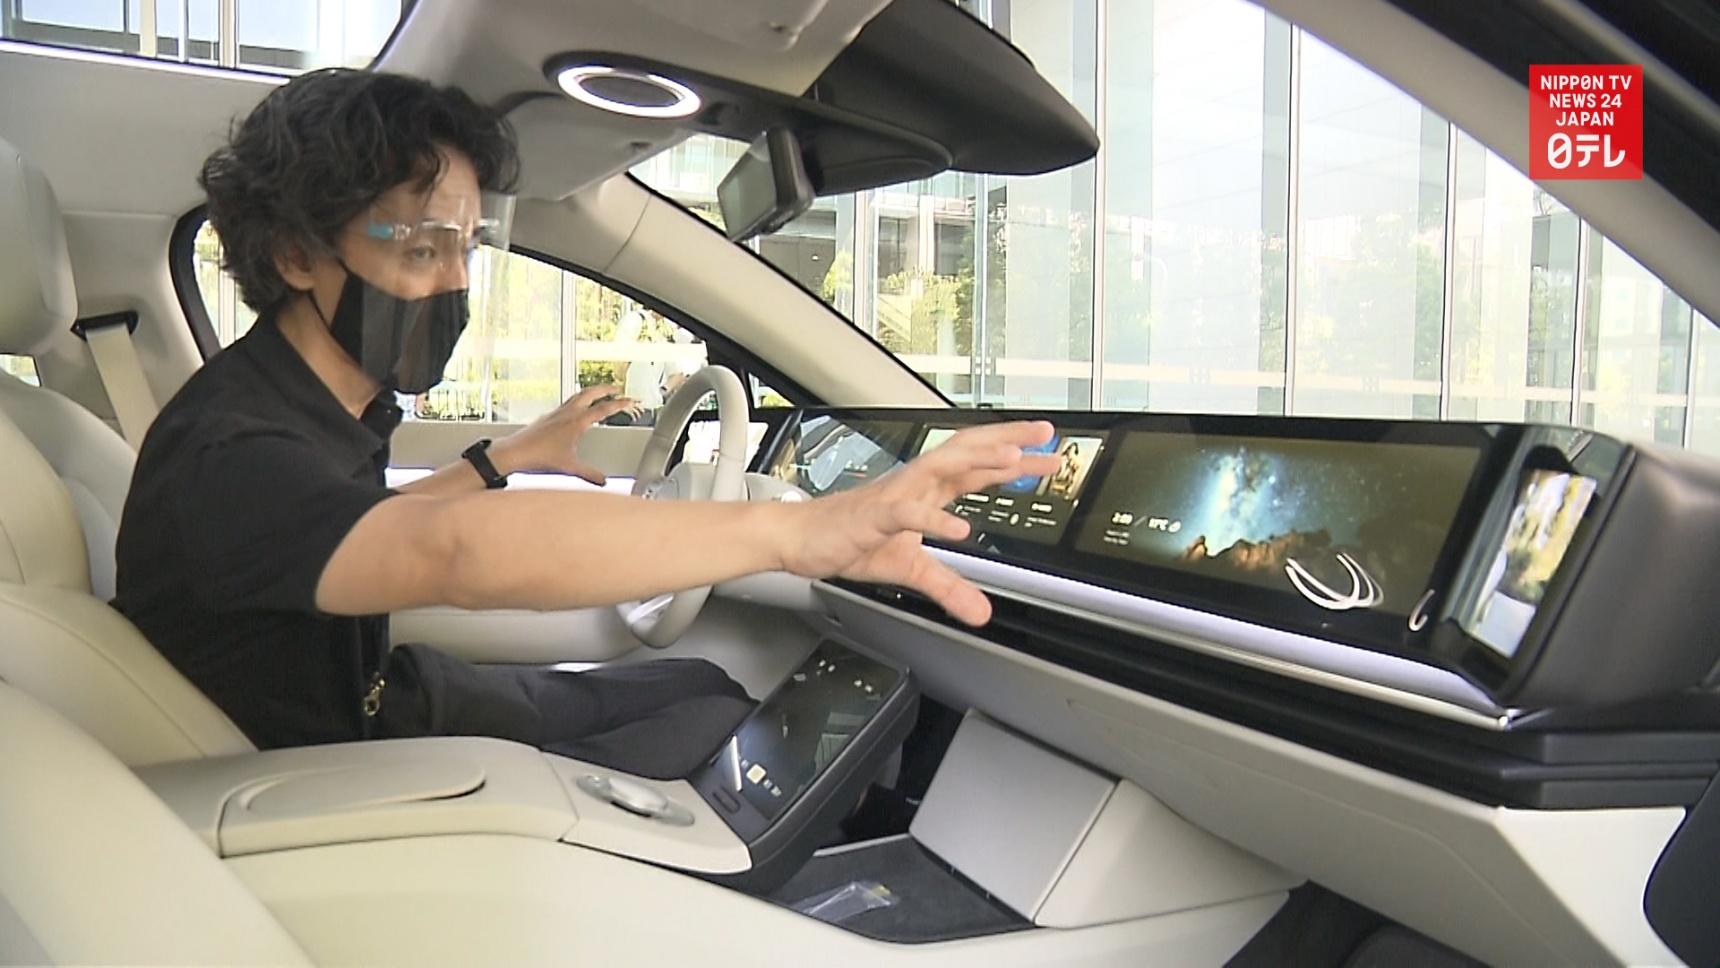 Sony Reveals New Self-Driving EV Prototype